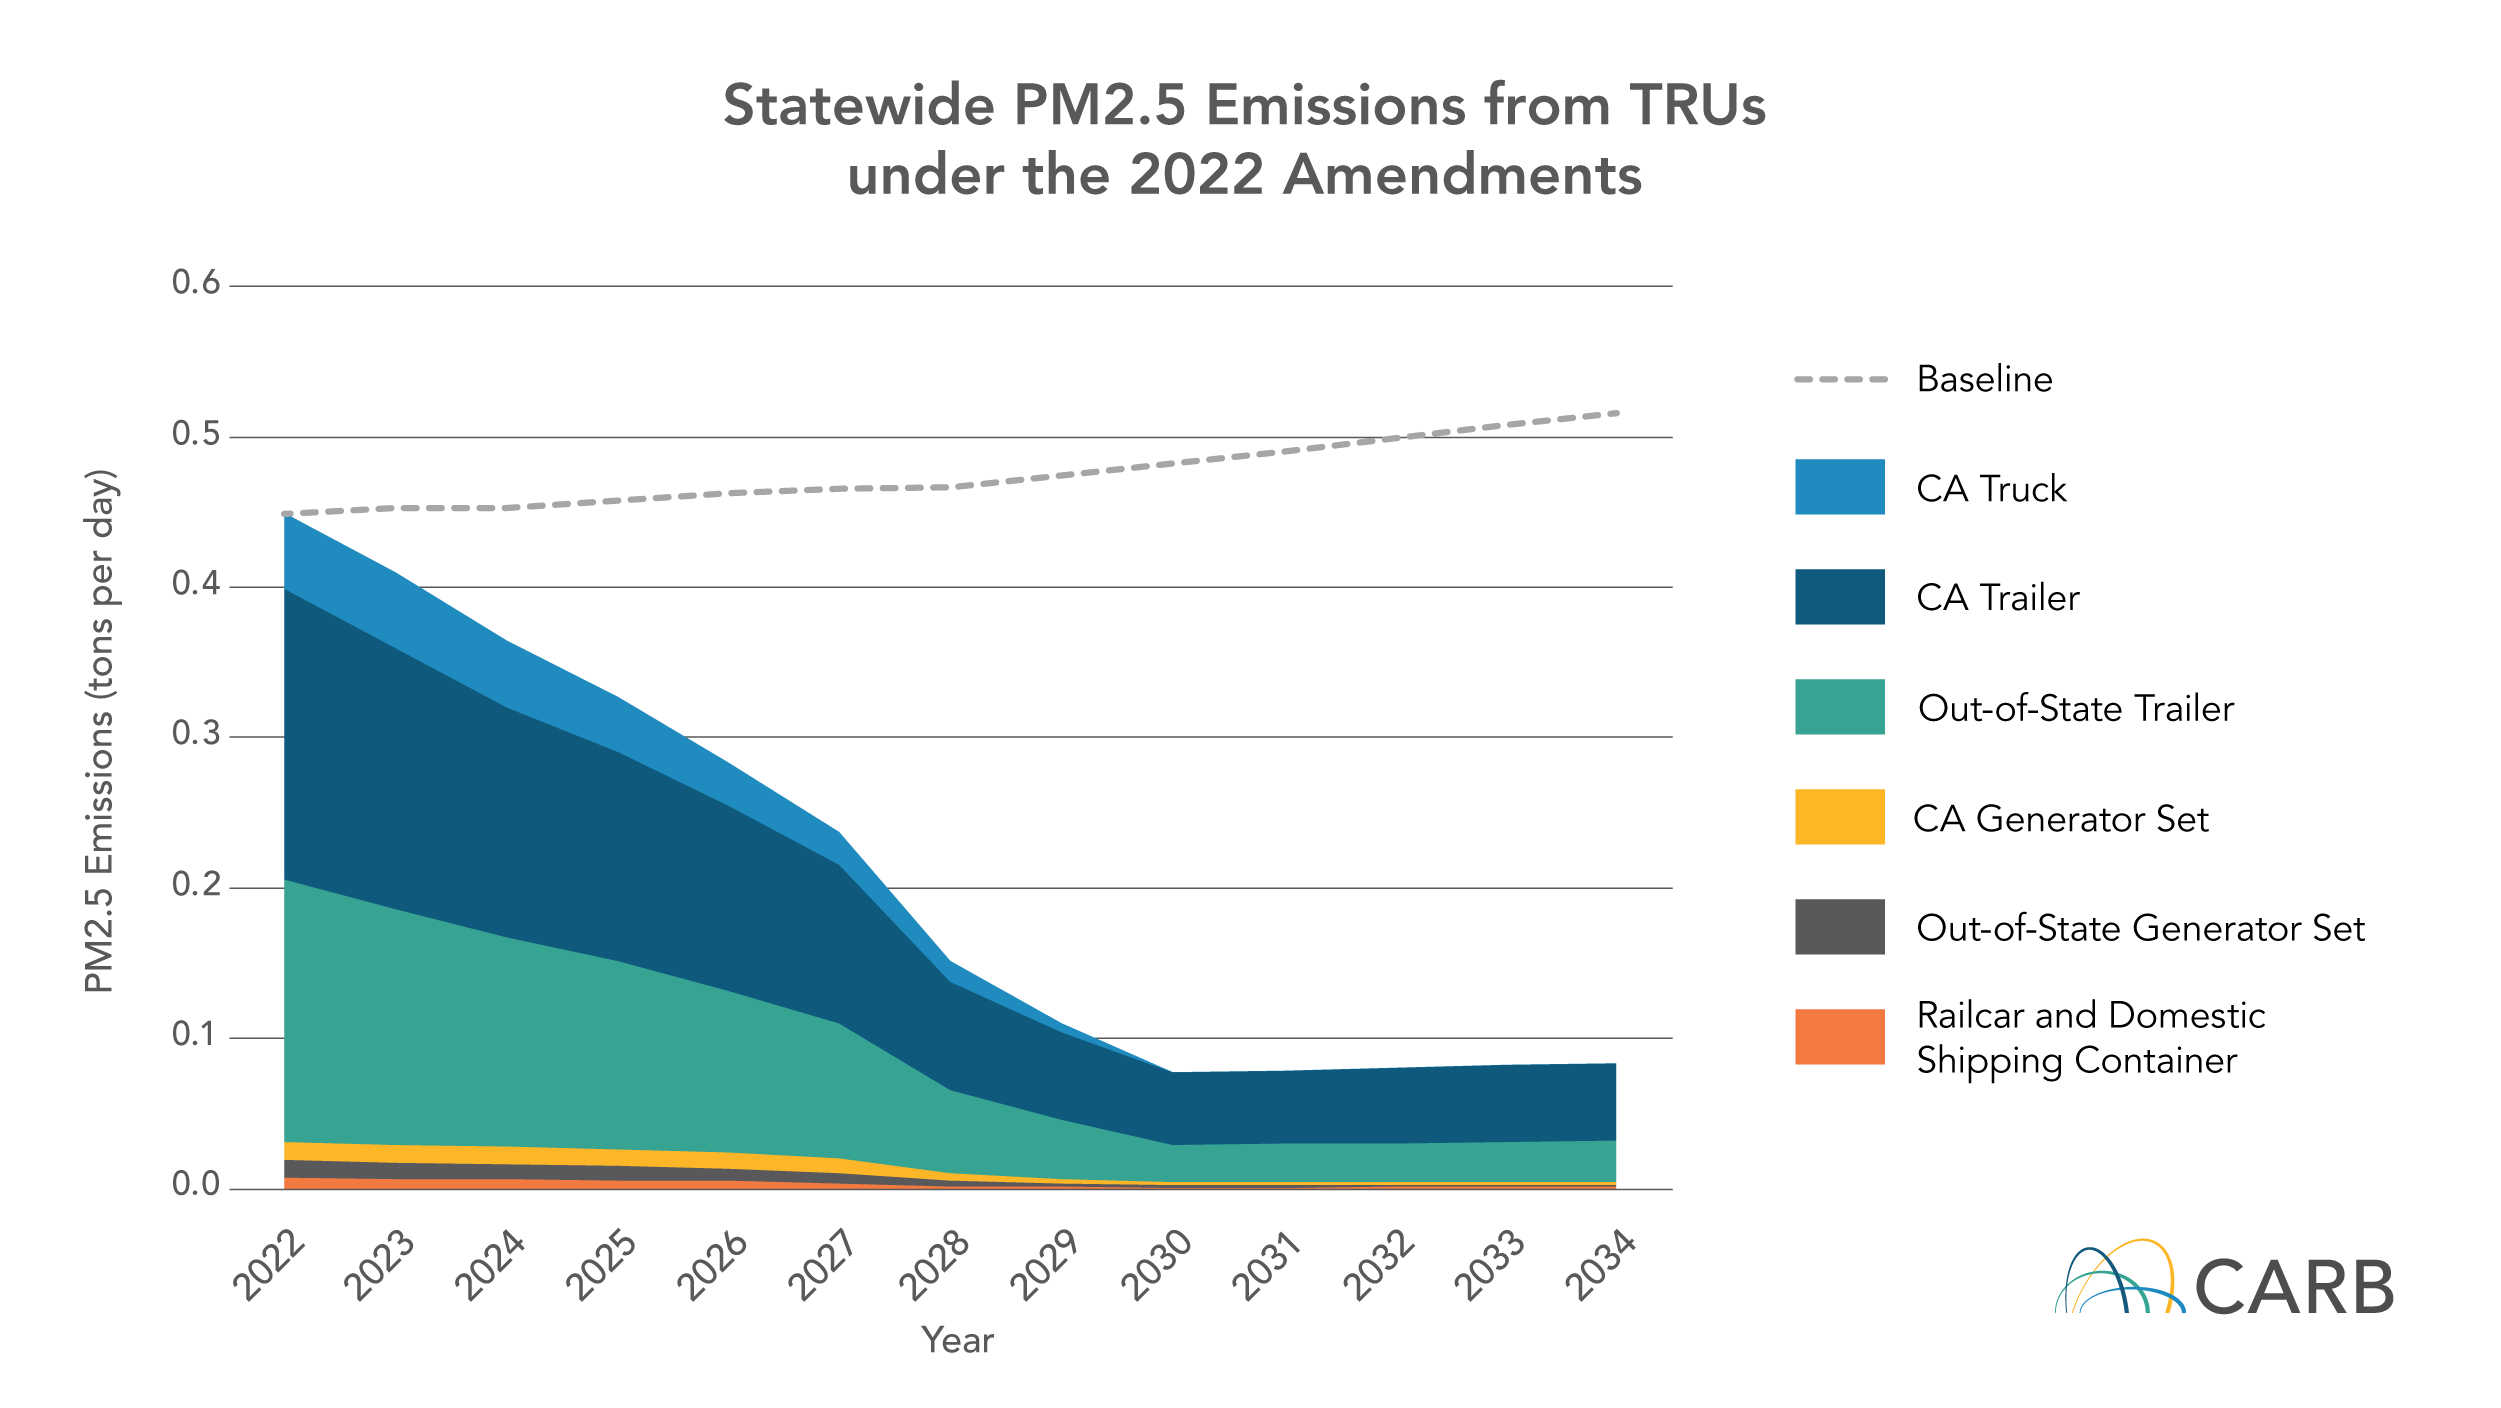 PM2.5 Emissions Reductions